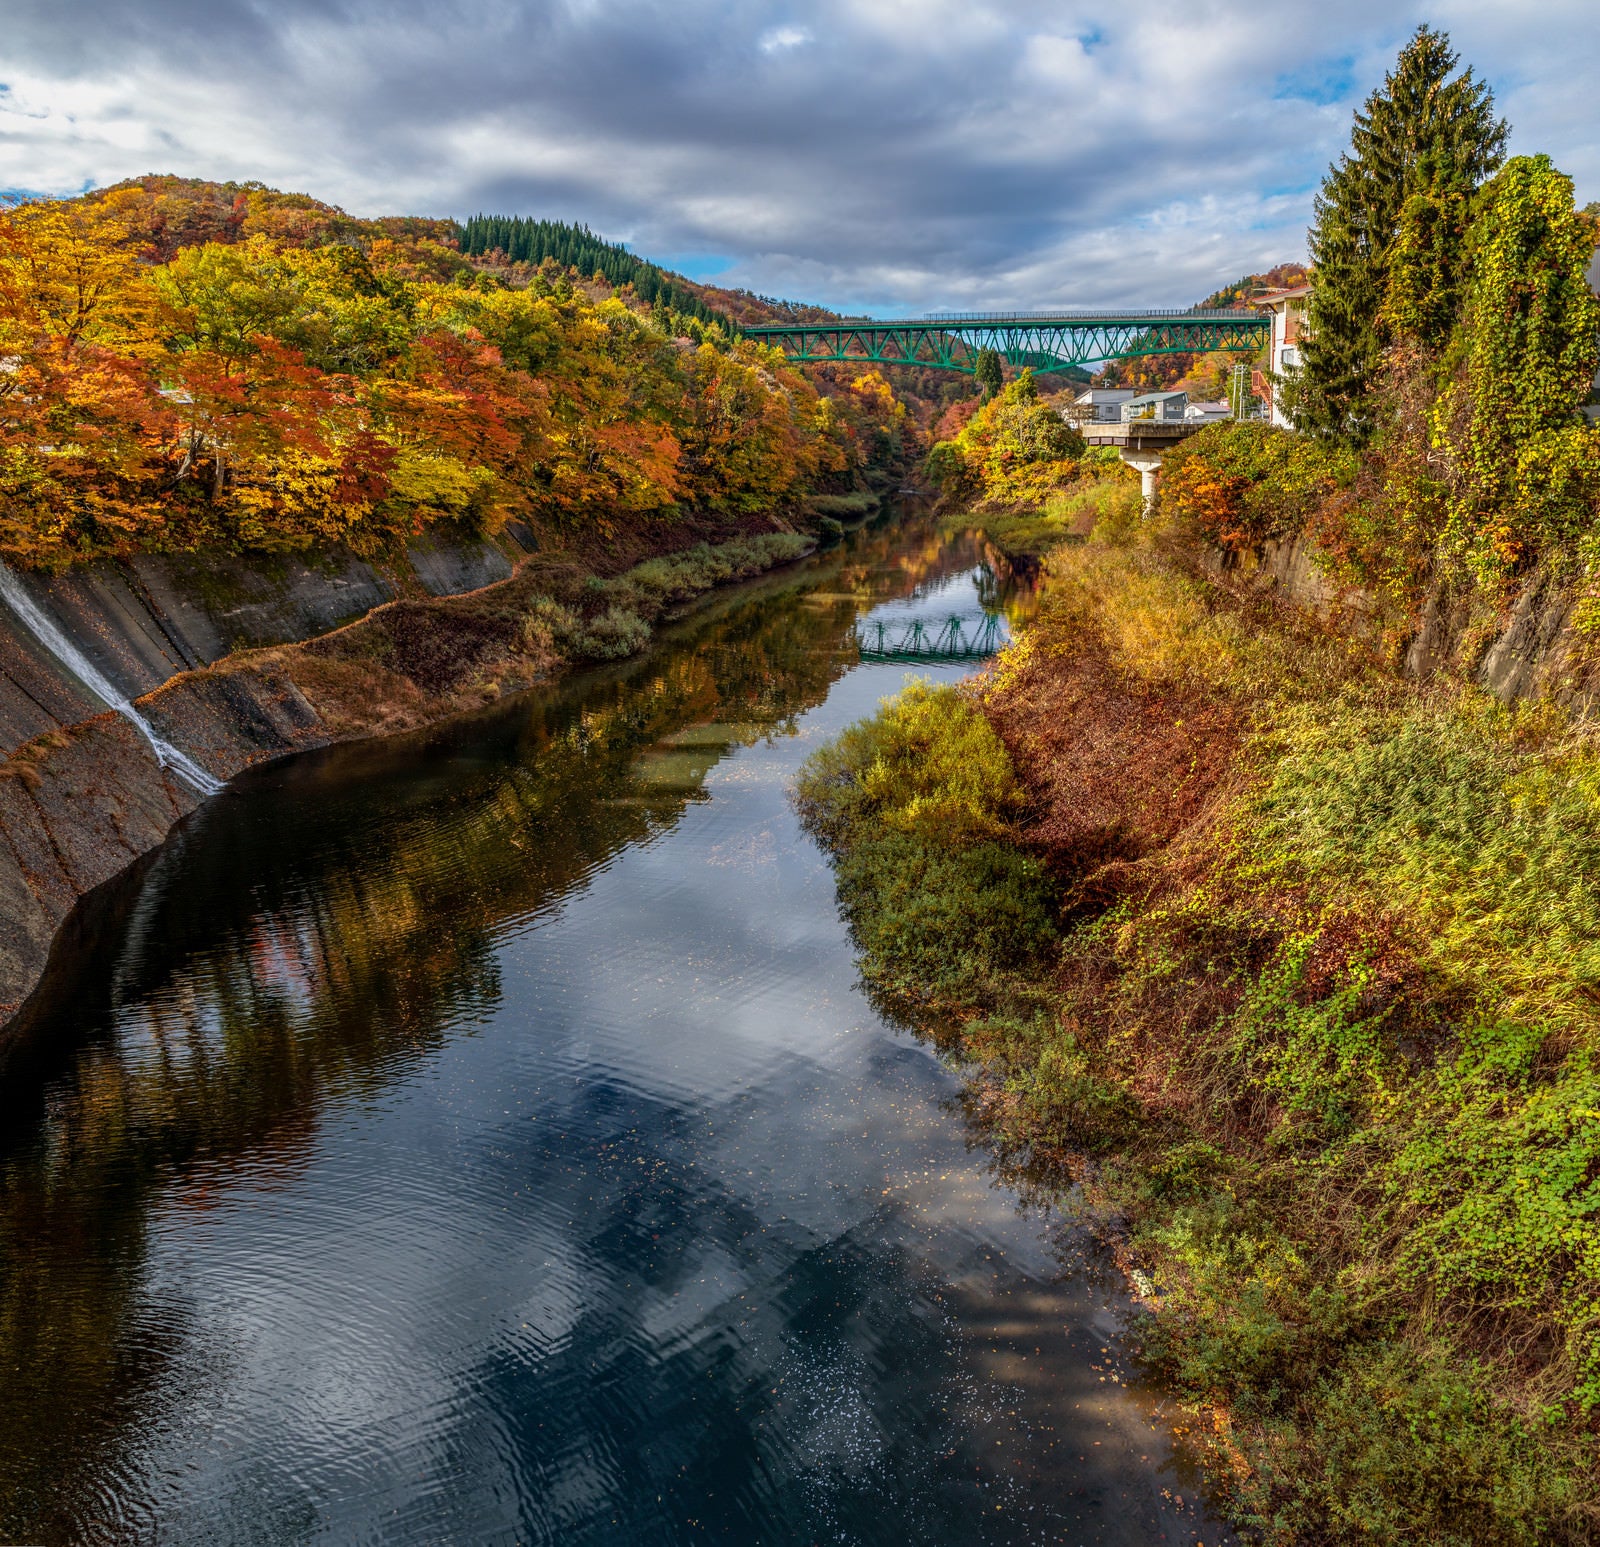 「鉄橋に向かう水路沿いの紅葉した木々とリフレクション」の写真